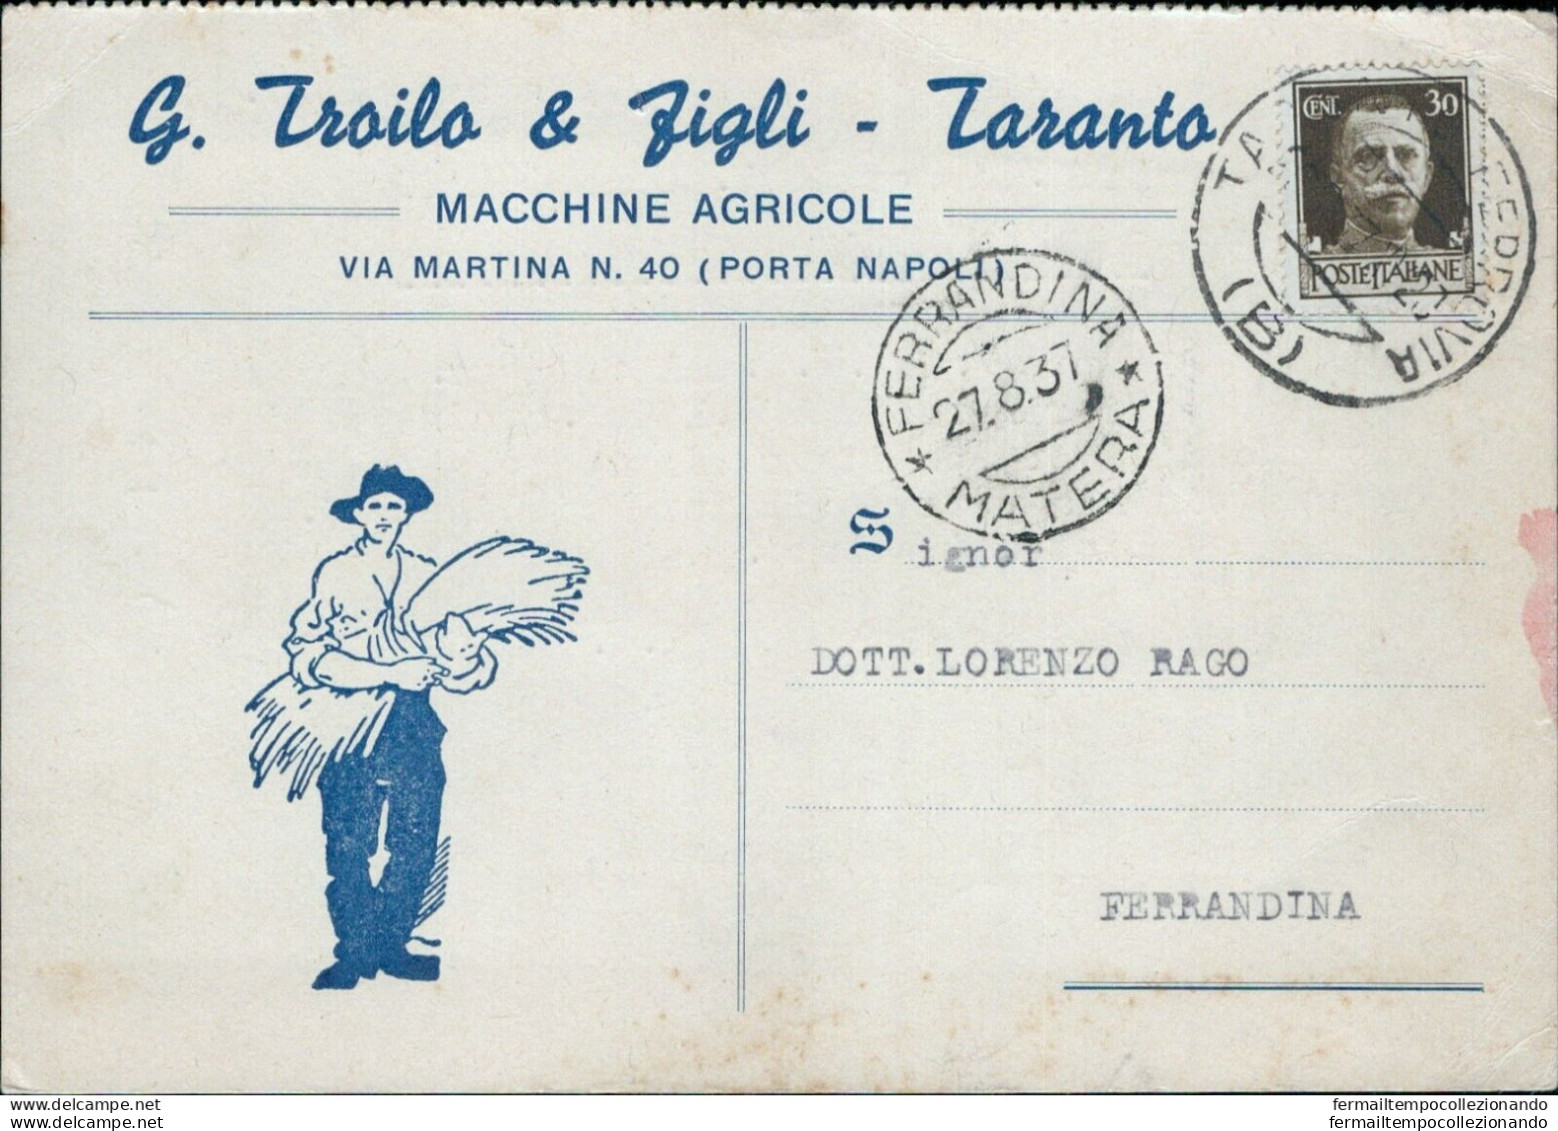 Cl177 Cartolina Commerciale Taranto Citta' 1937 - Taranto